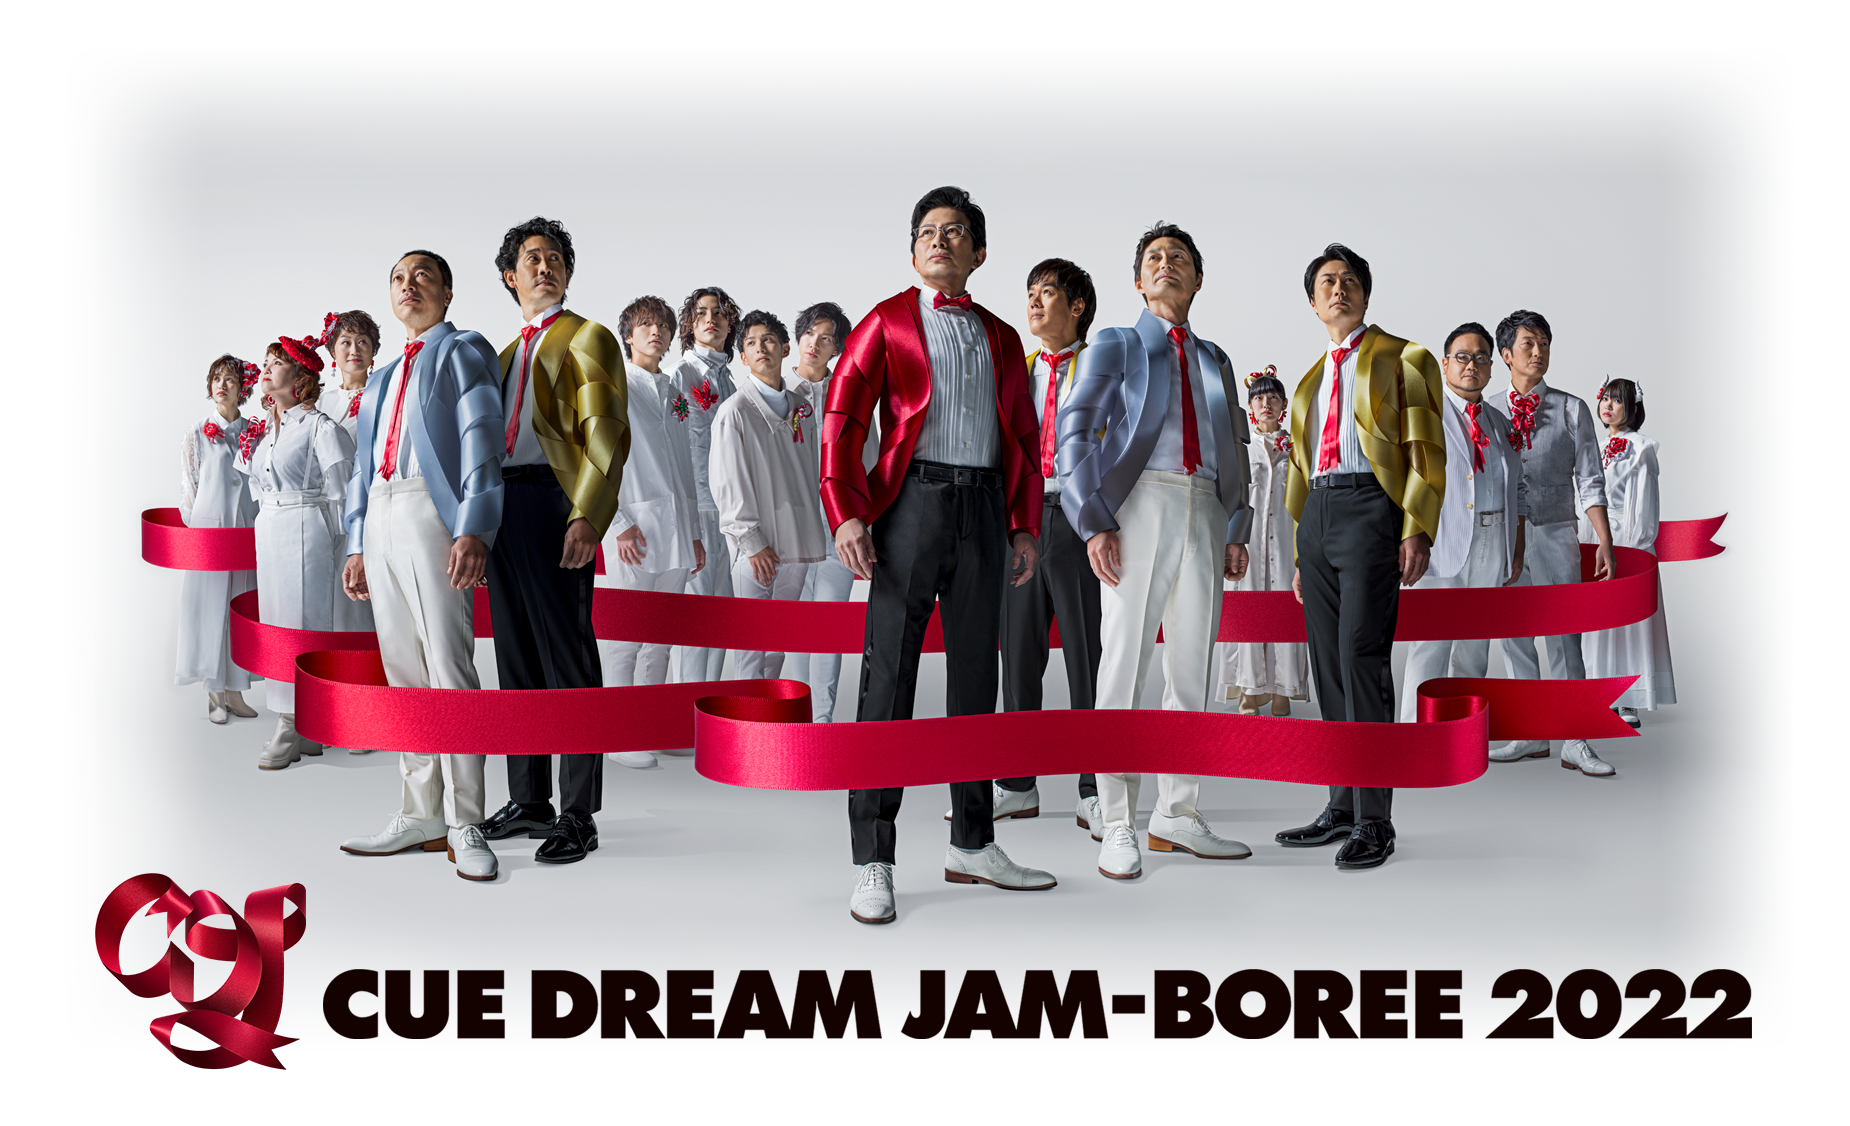 [CDJ2016] CUE DREAM JAM-BOREE 2016